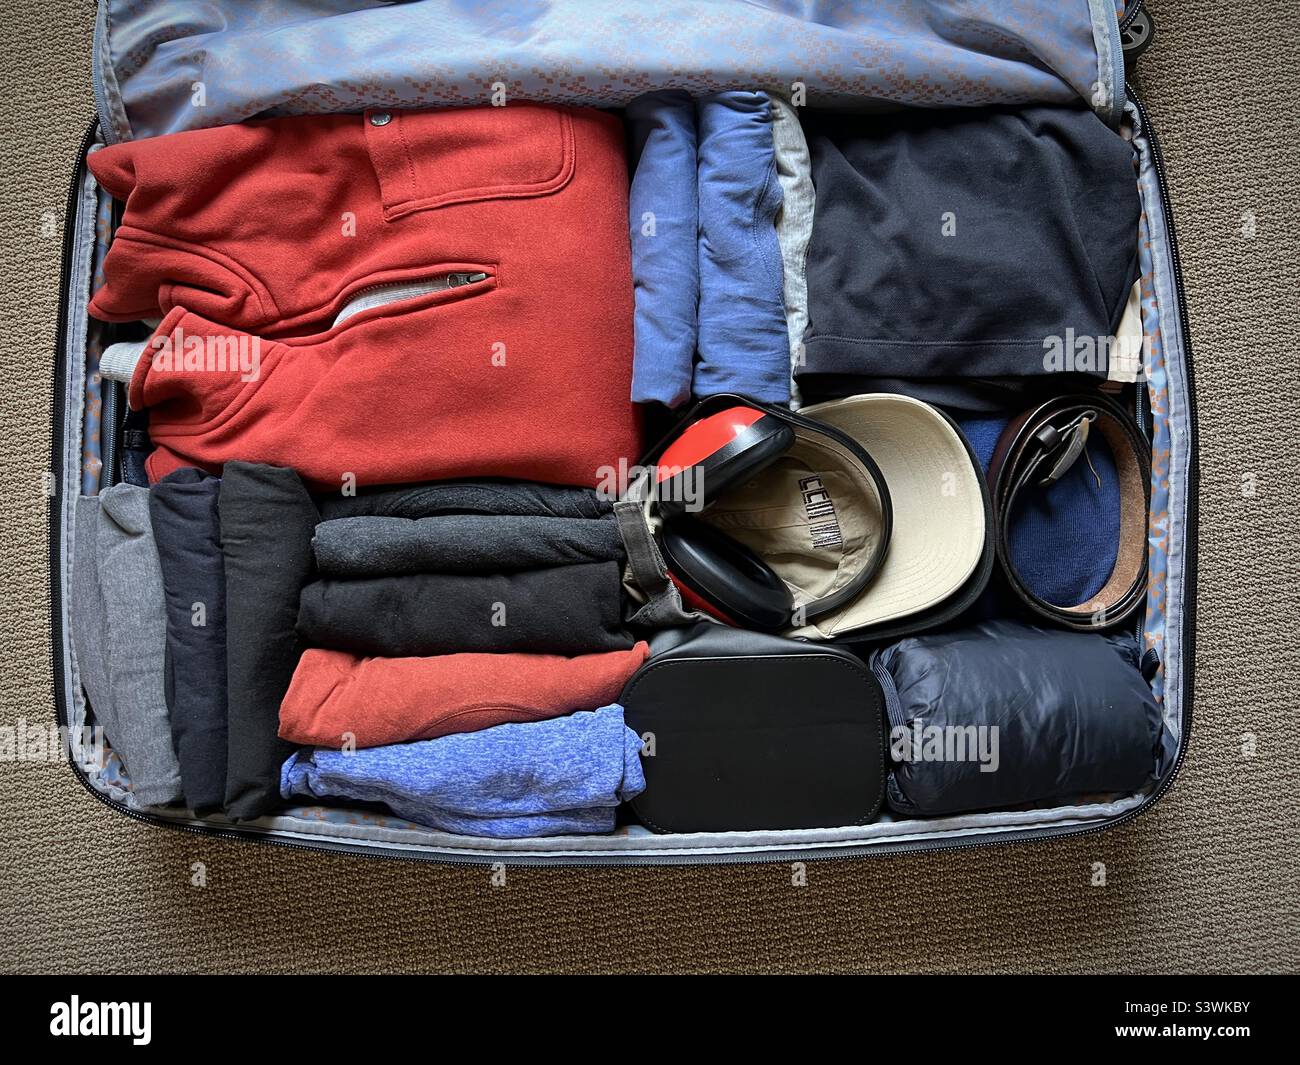 https://c8.alamy.com/compes/s3wkby/maleta-bien-equipada-con-varias-prendas-incluyendo-camisetas-capas-de-abrigo-y-protectores-auditivos-lista-para-viajar-s3wkby.jpg